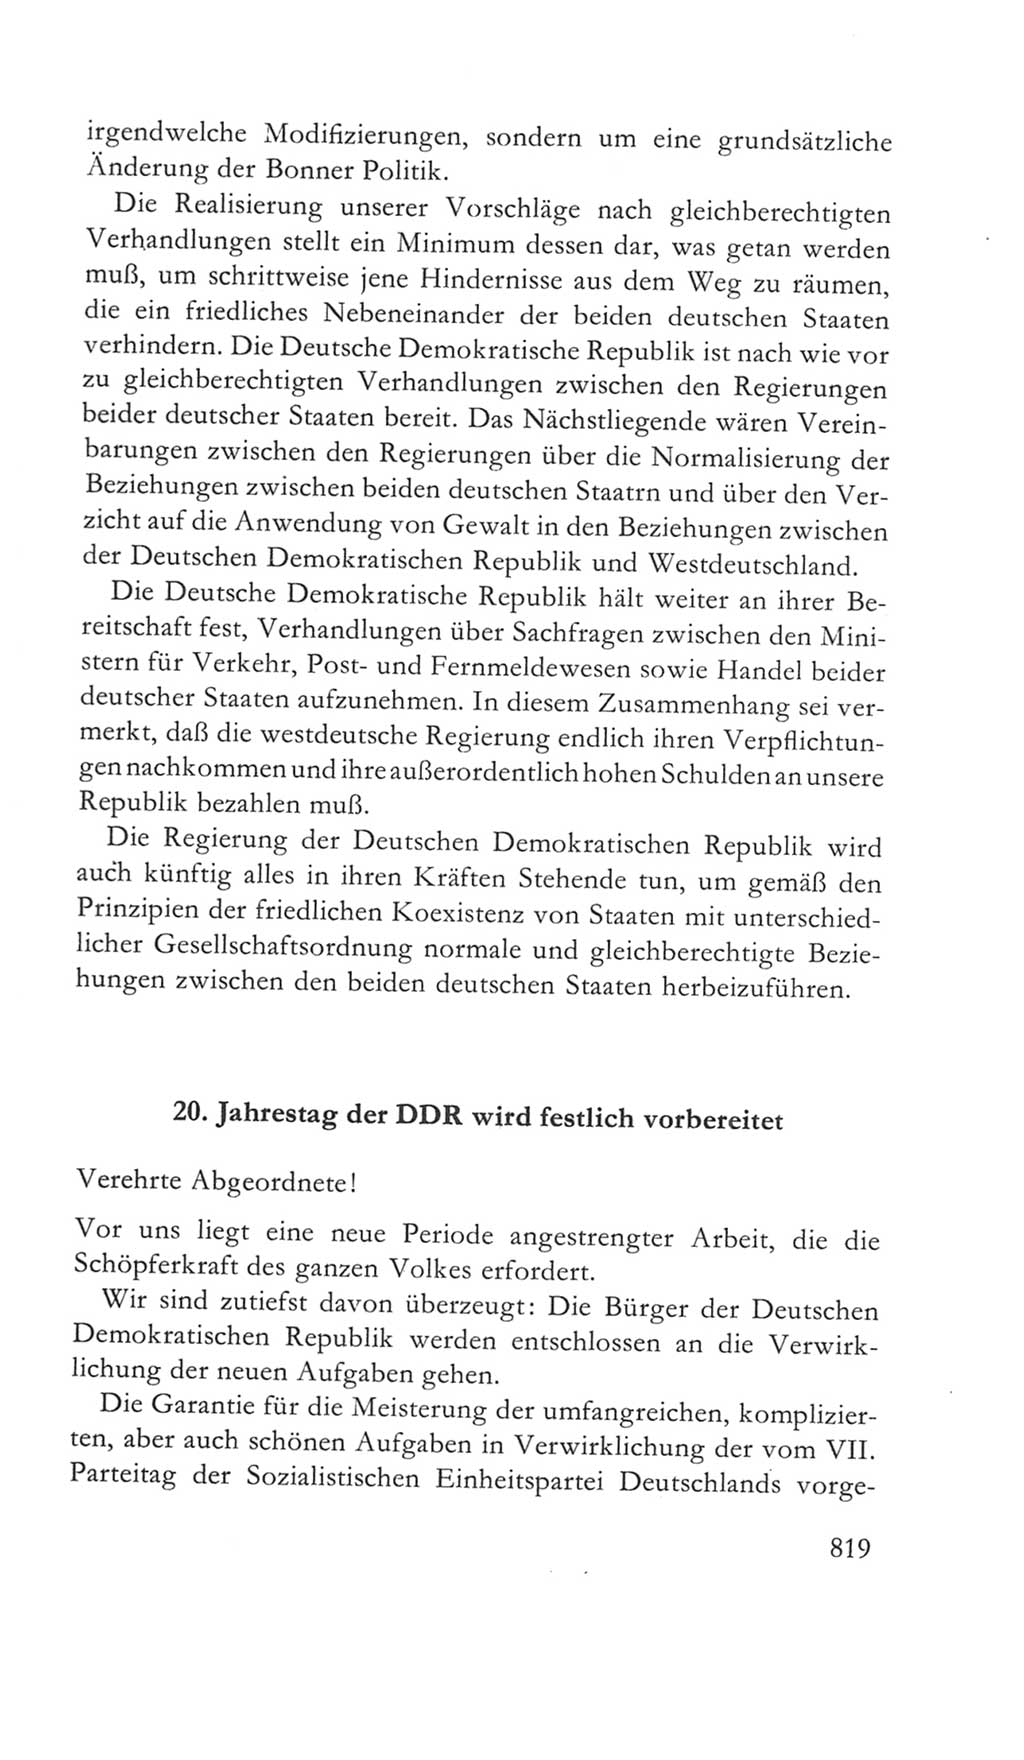 Volkskammer (VK) der Deutschen Demokratischen Republik (DDR) 5. Wahlperiode 1967-1971, Seite 819 (VK. DDR 5. WP. 1967-1971, S. 819)